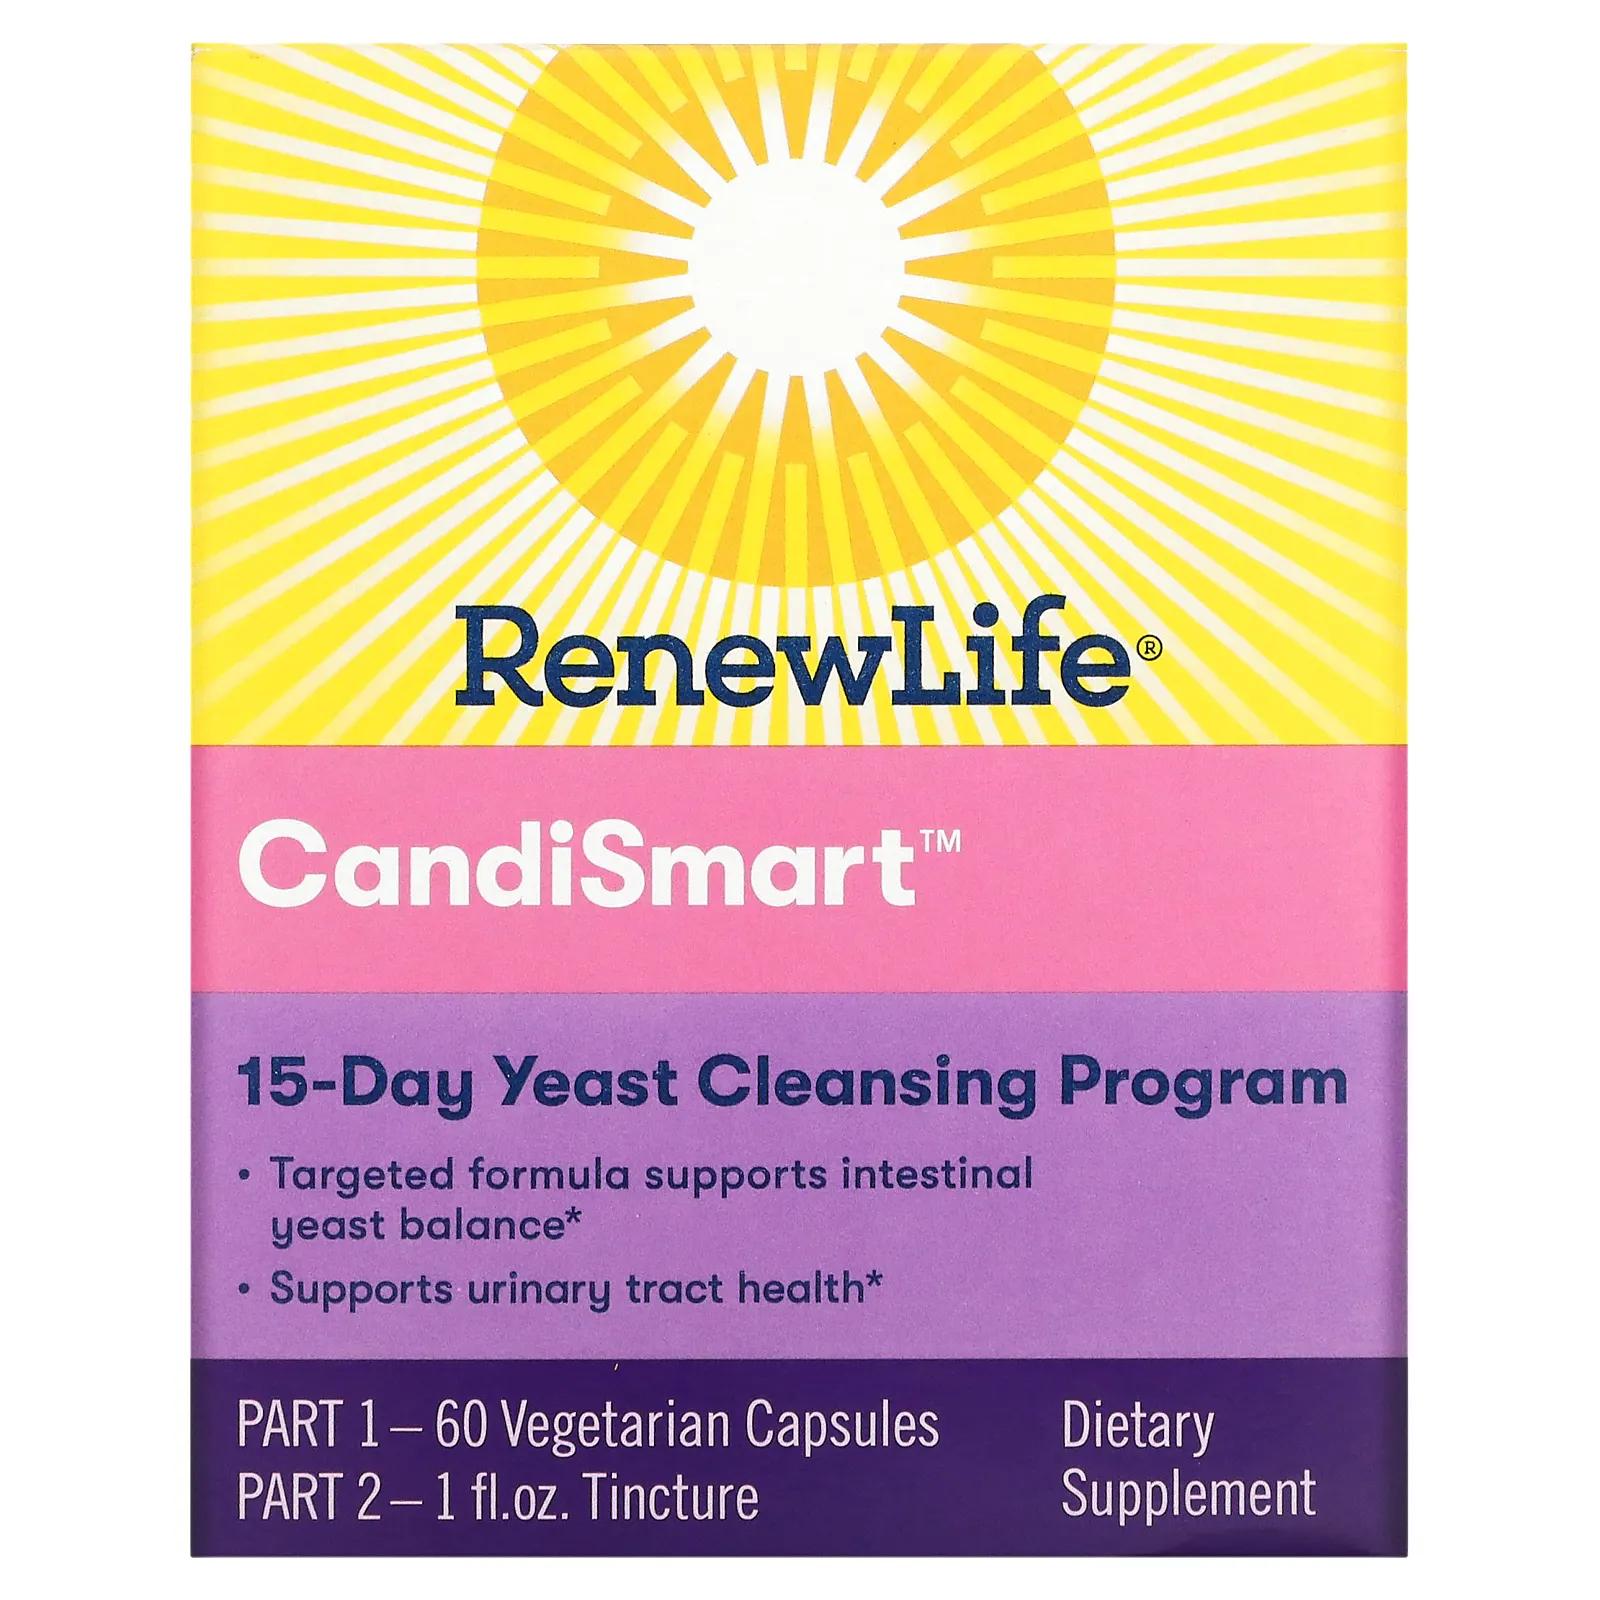 Renew Life Целевая Candi Smart очищающая дрожжевая формула 15-дневная программа 2-компонентная программа полностью чистая органическая пребиотическая клетчатка renew life